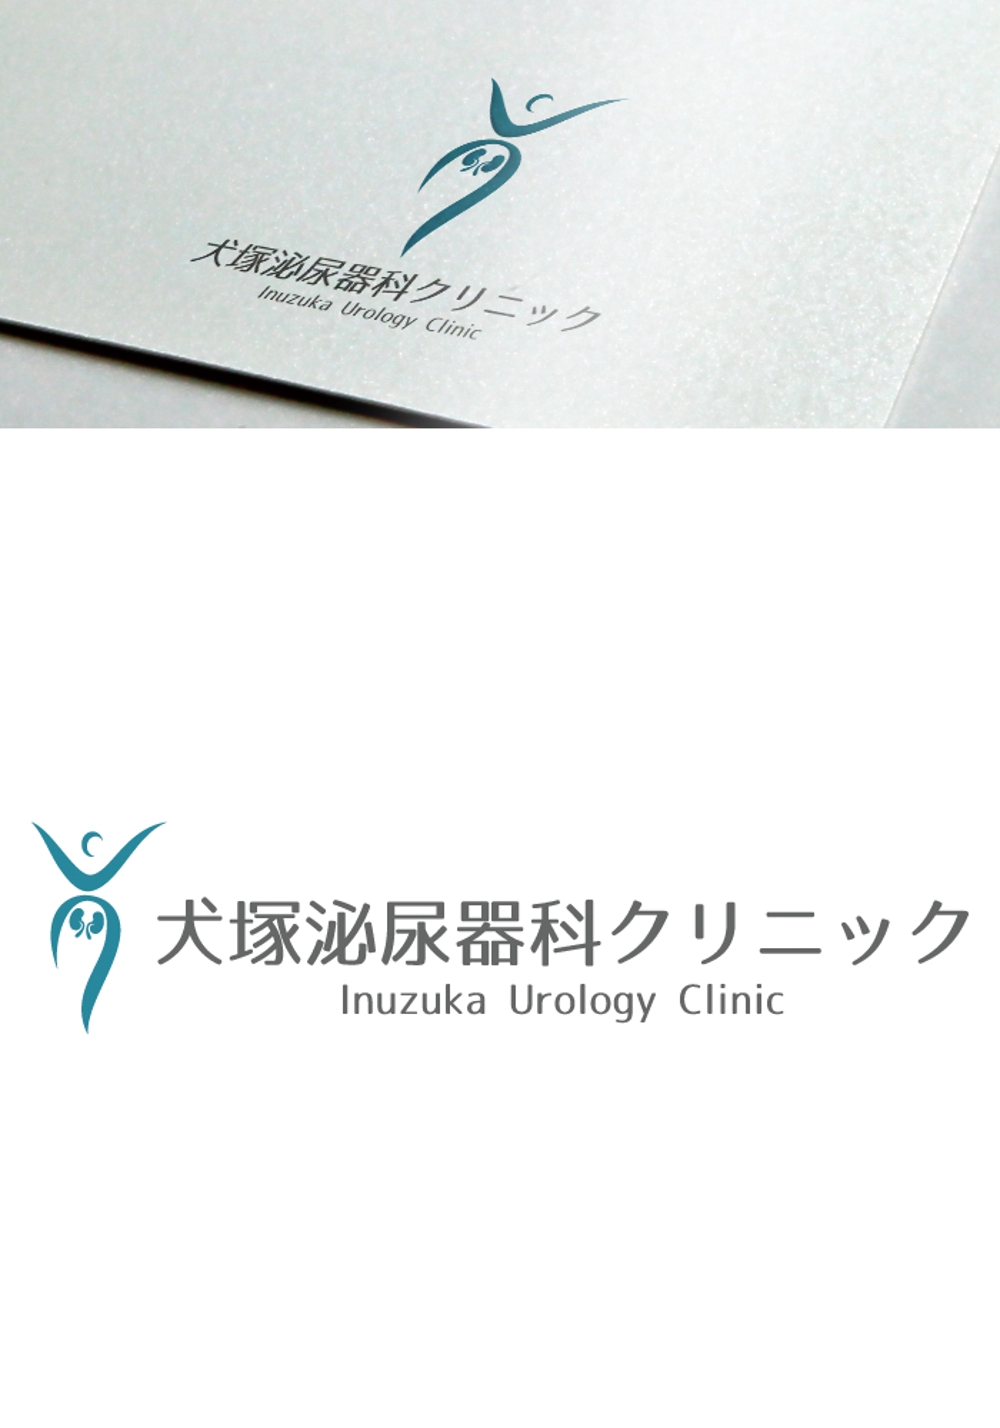 犬塚泌尿器科クリニックのロゴ